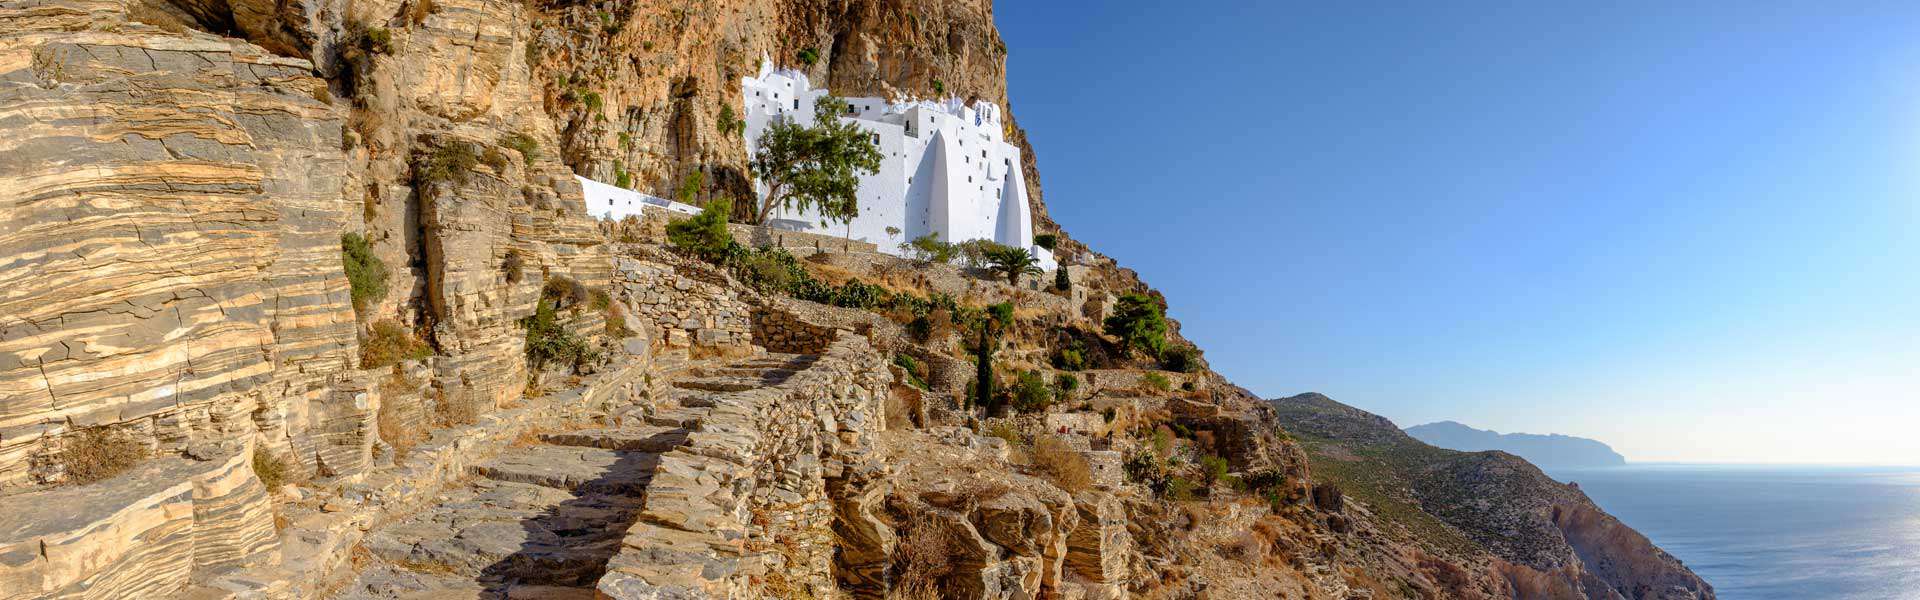 Heilige Stätte, göttliche Landschaft: Das Kloster Chozoviotissa in Griechenland Amorgos